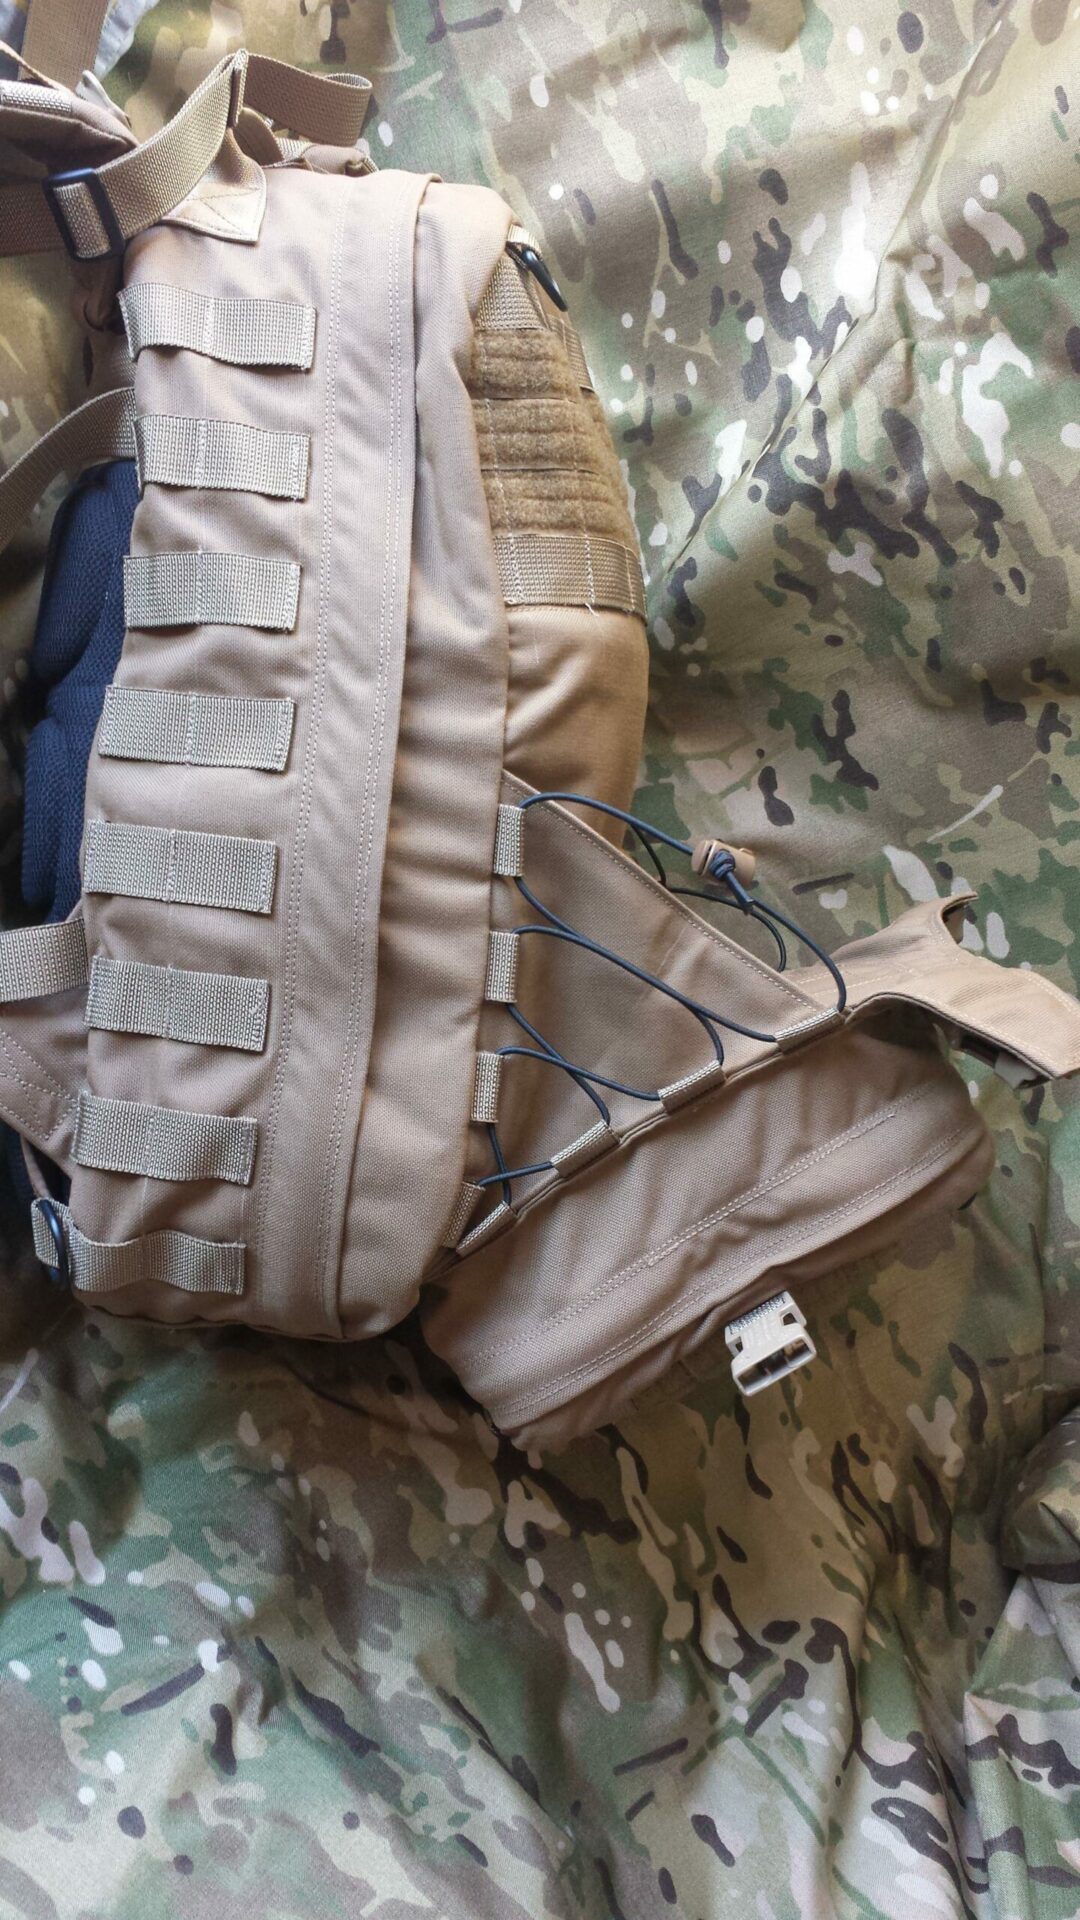 1/35 DIY Militärsoldaten Medizin Rucksack Tasche für Sand Armor Scene Accs 